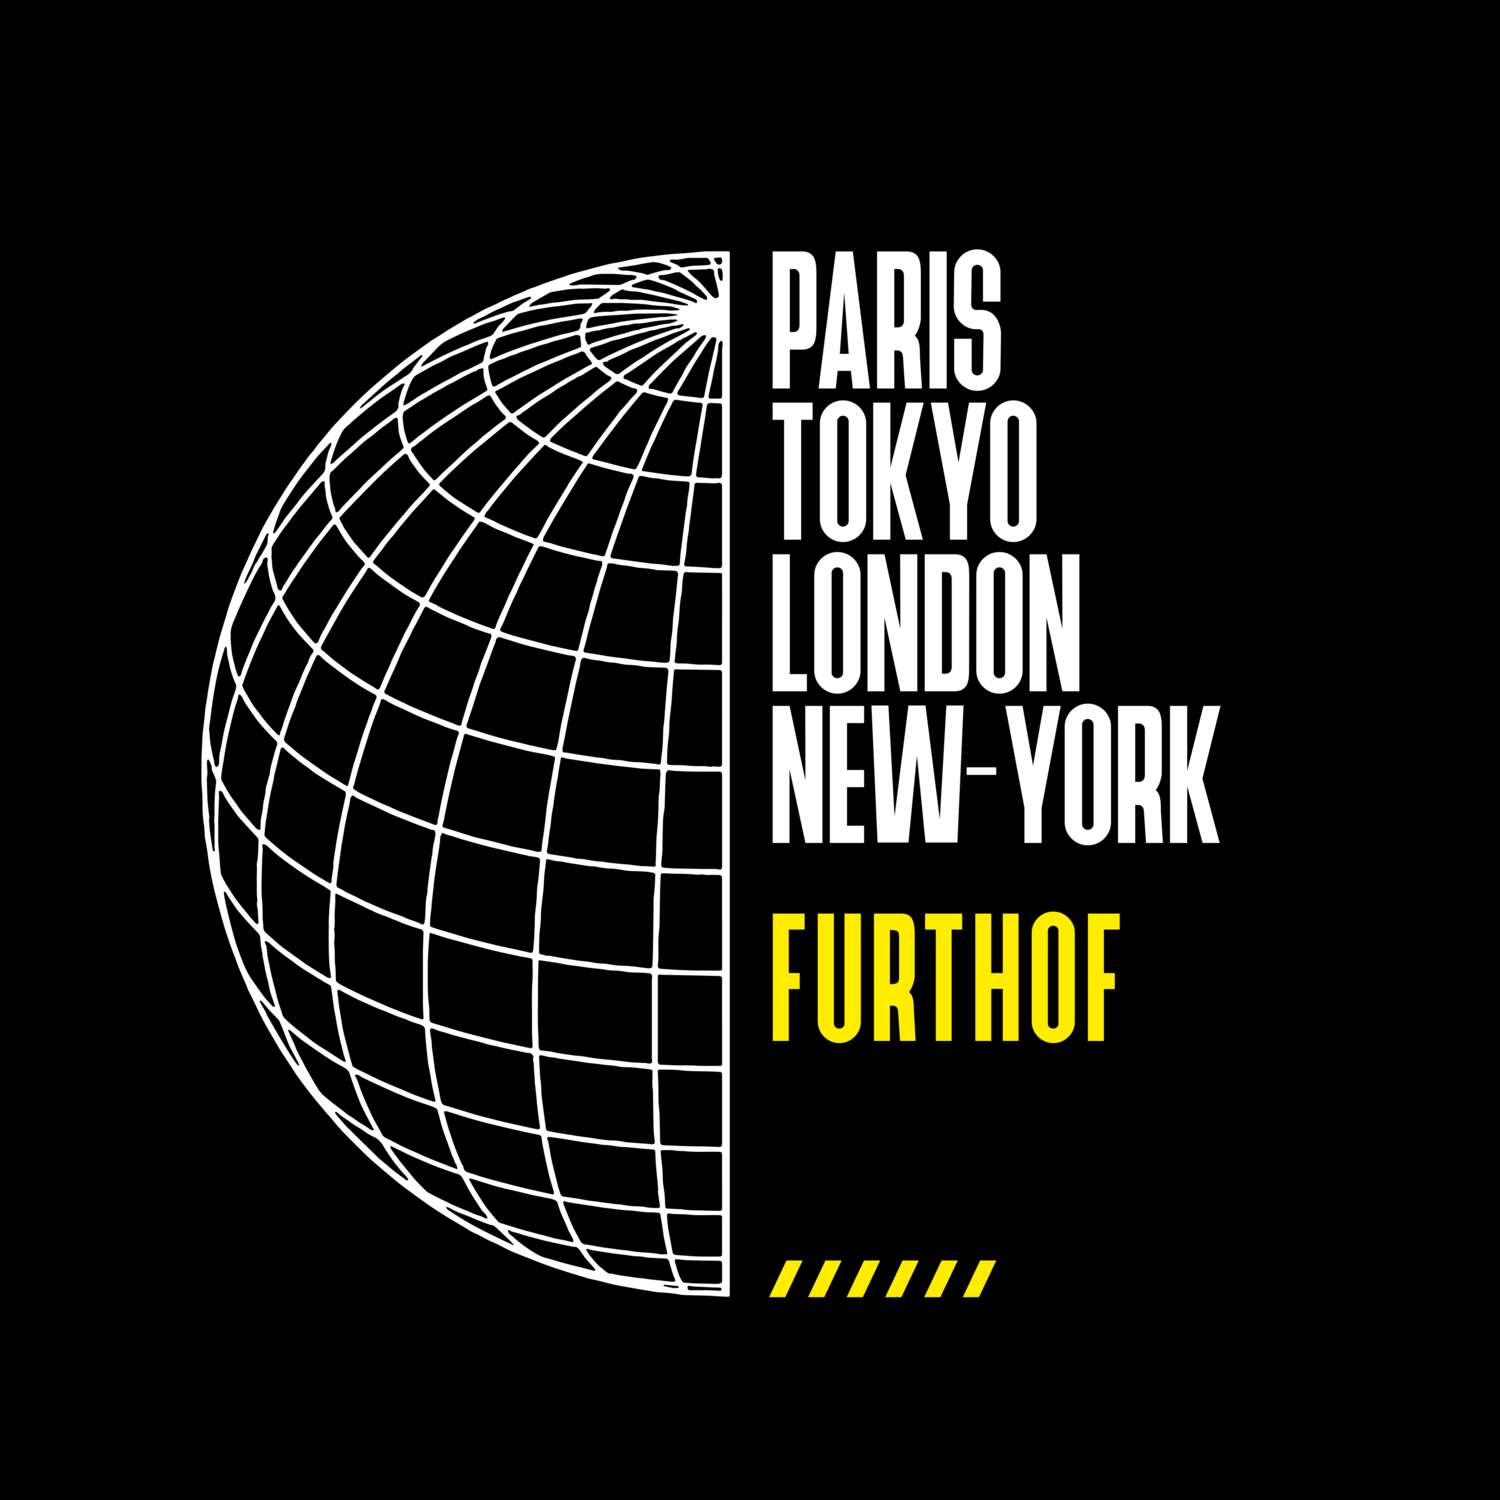 Furthof T-Shirt »Paris Tokyo London«